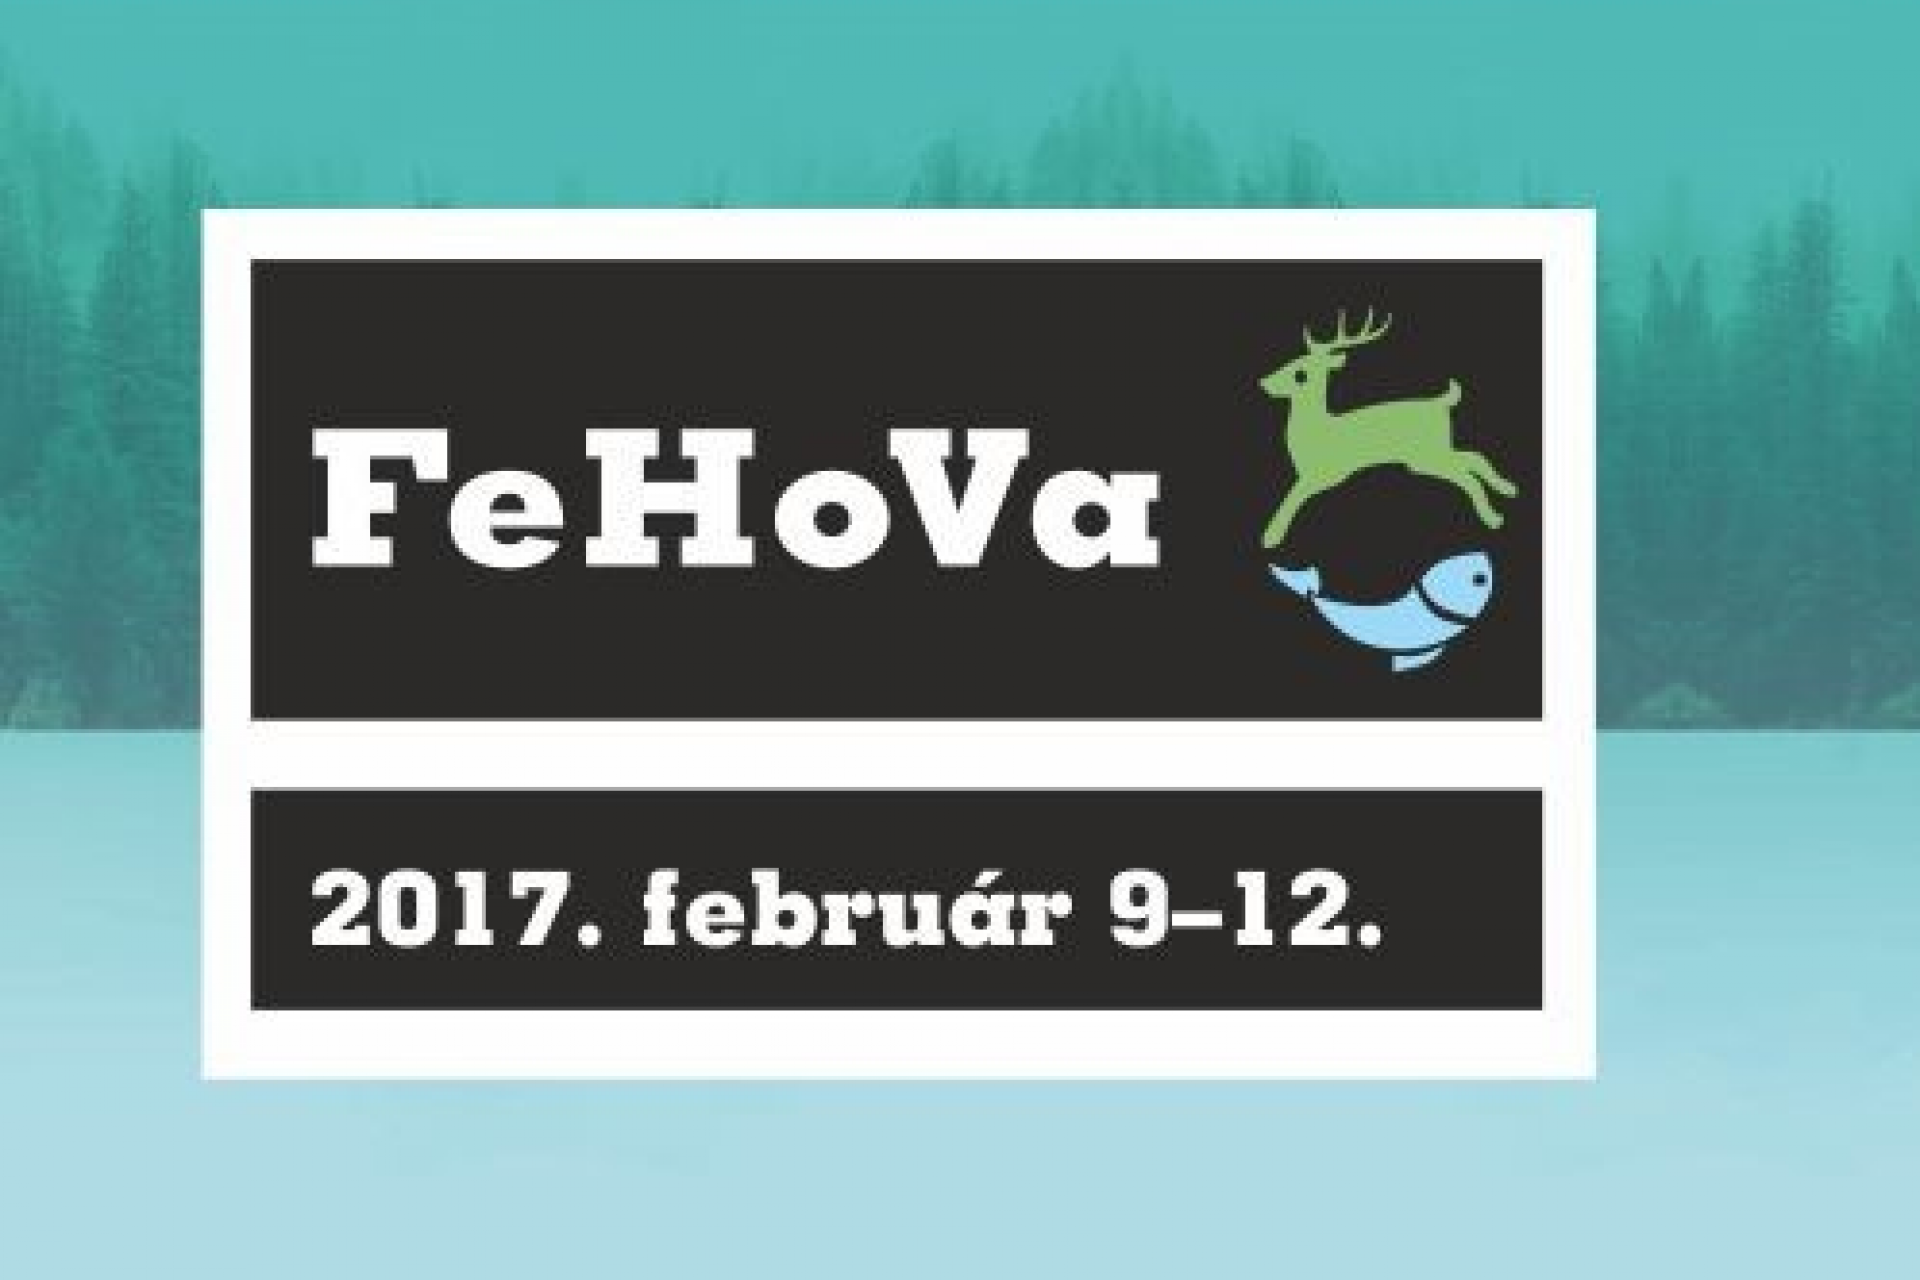 FeHoVa - Jöjjön el barátaival, kollégáival, családtagjaival, és nézze végig kiállítóink ajánlatait, hiszen számos újdonsággal, érdekességgel, praktikus ötletekkel, hasznos kiegészítőkkel és vásárfiának valóval várják az érdeklődőket! 